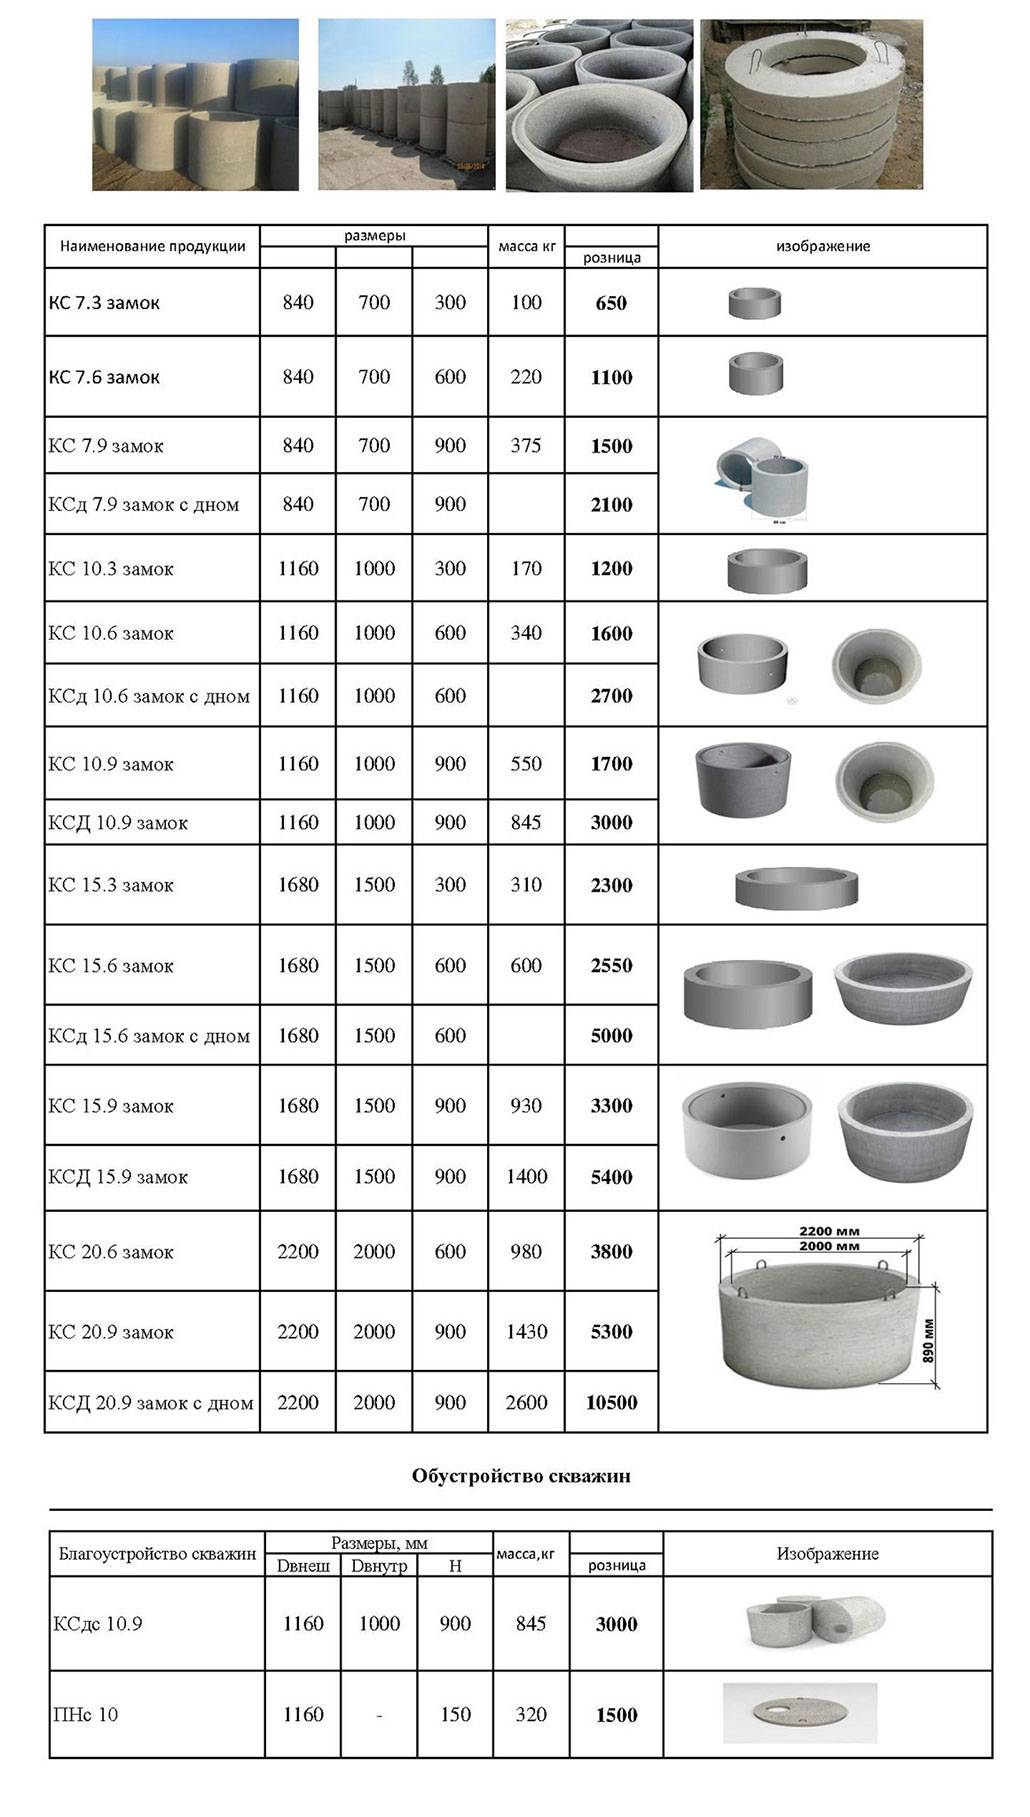 Вес бетонного кольца 1 м для колодца. размеры железобетонных (ж/б или жби) колодезных колец. таблицы согласно гост. технические характеристики